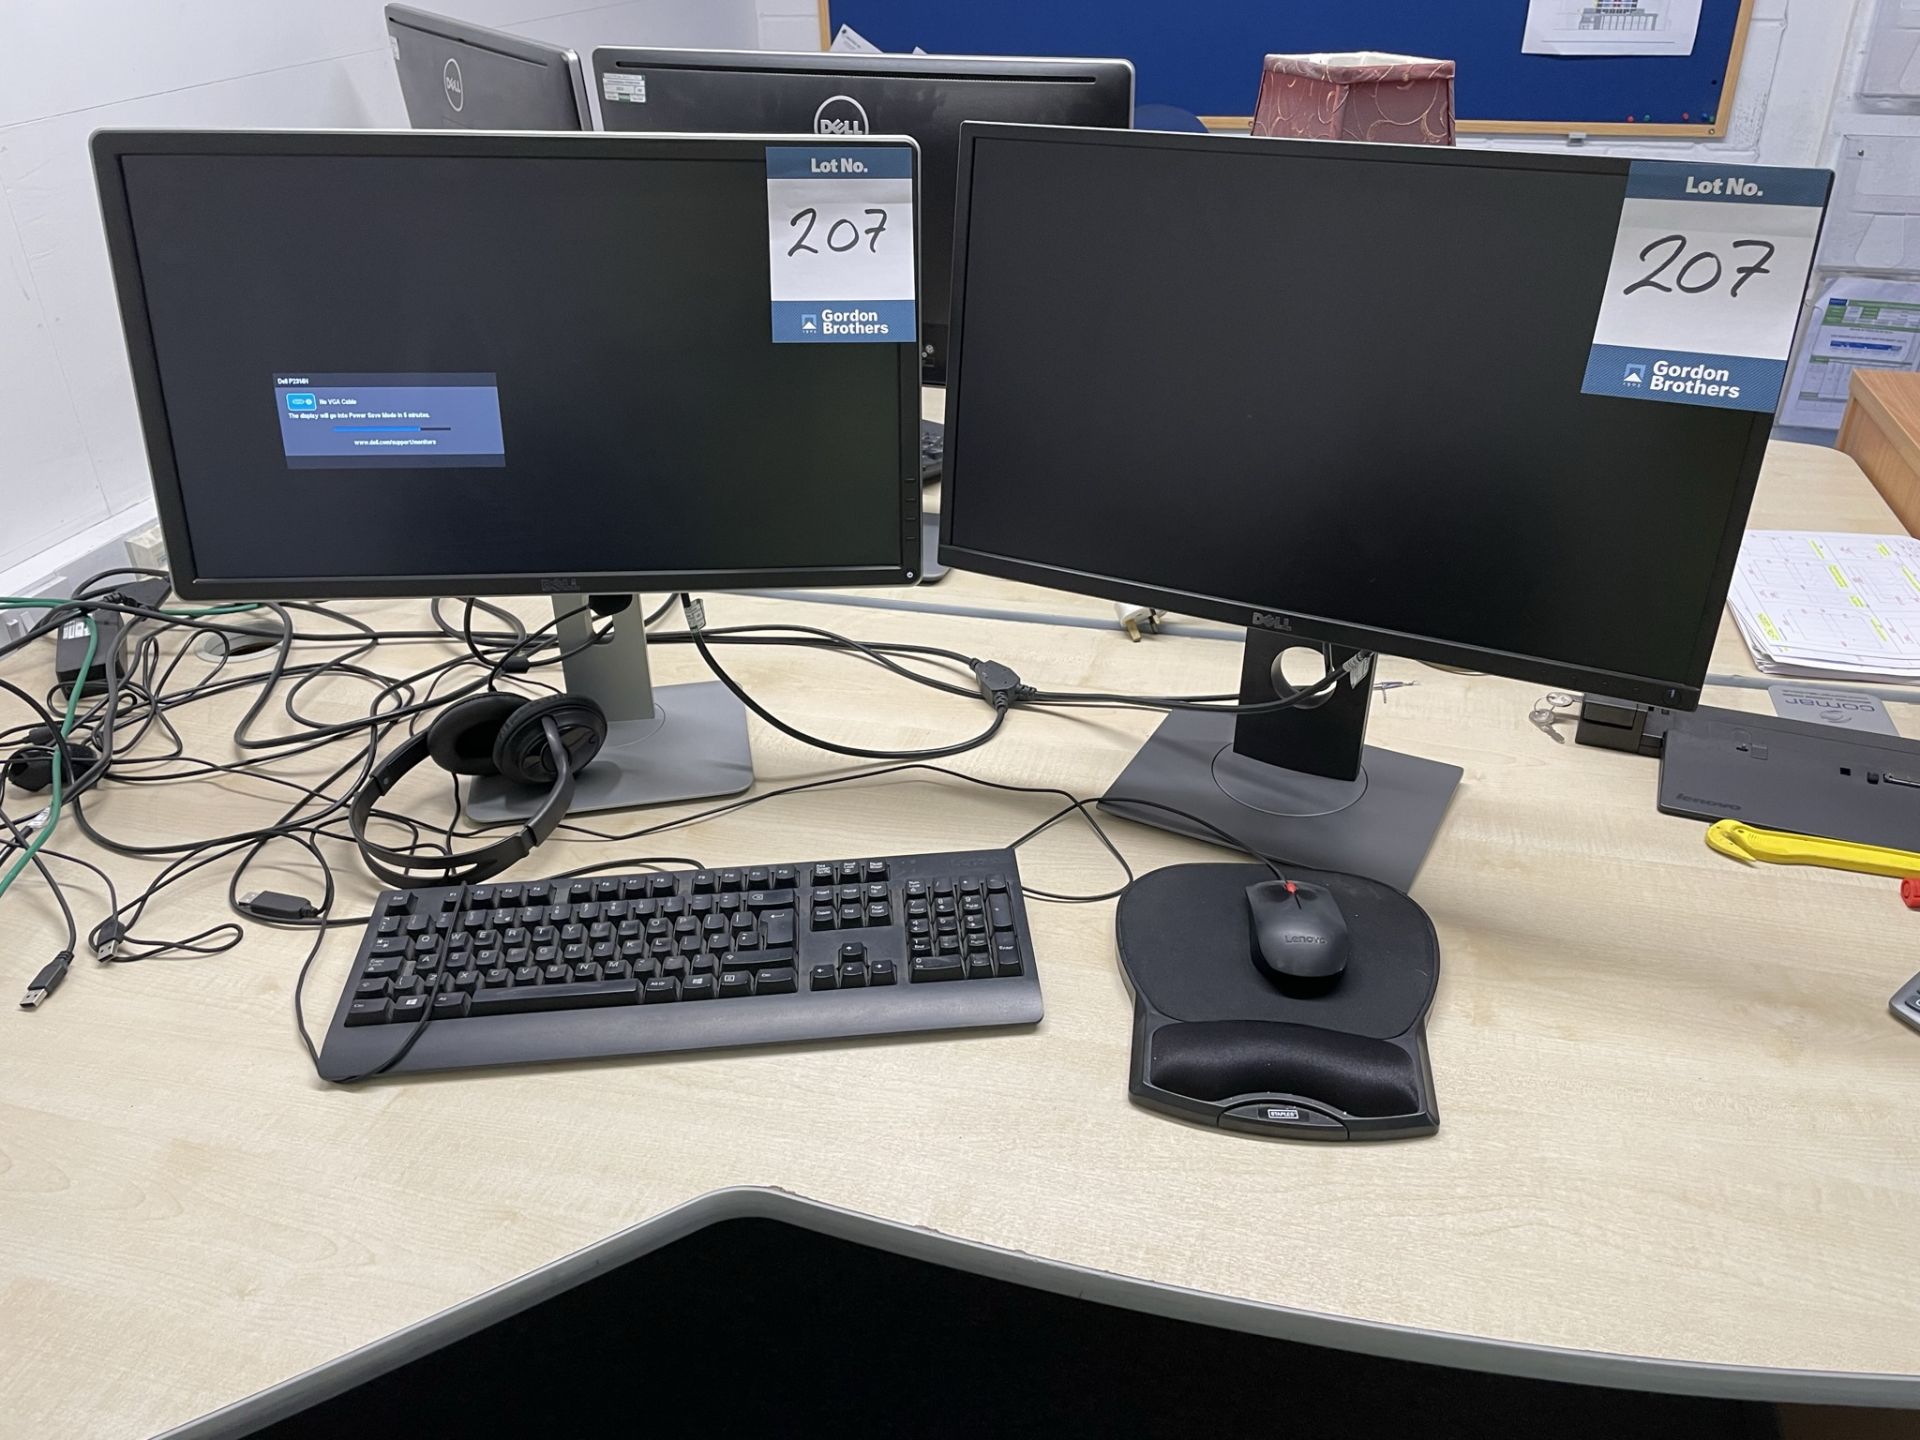 2x (no.) Dell monitors, keyboard and ThinkPad docking station